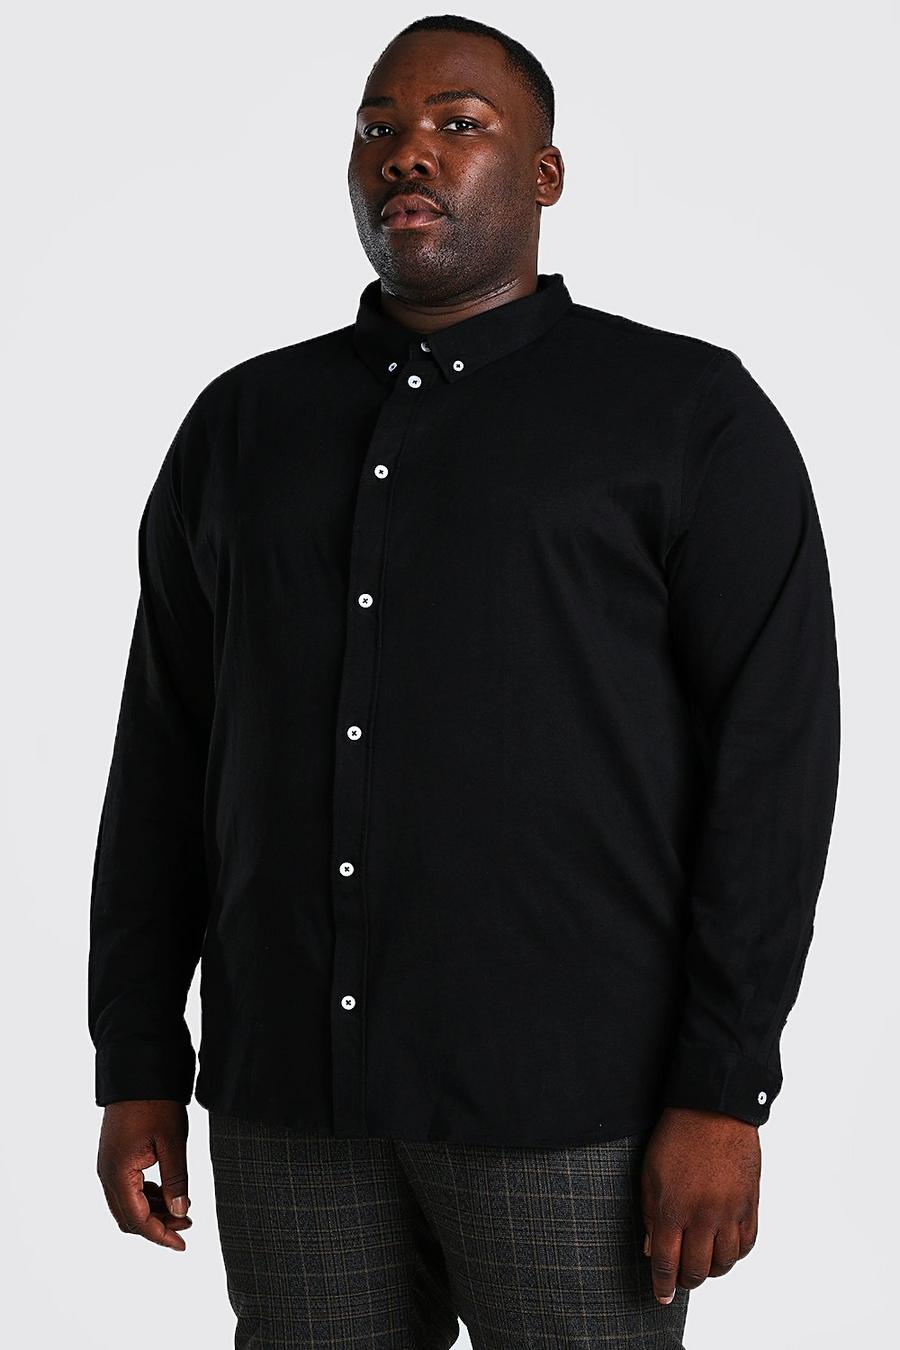 T-shirt Plus Size in maglia con trama, Nero negro